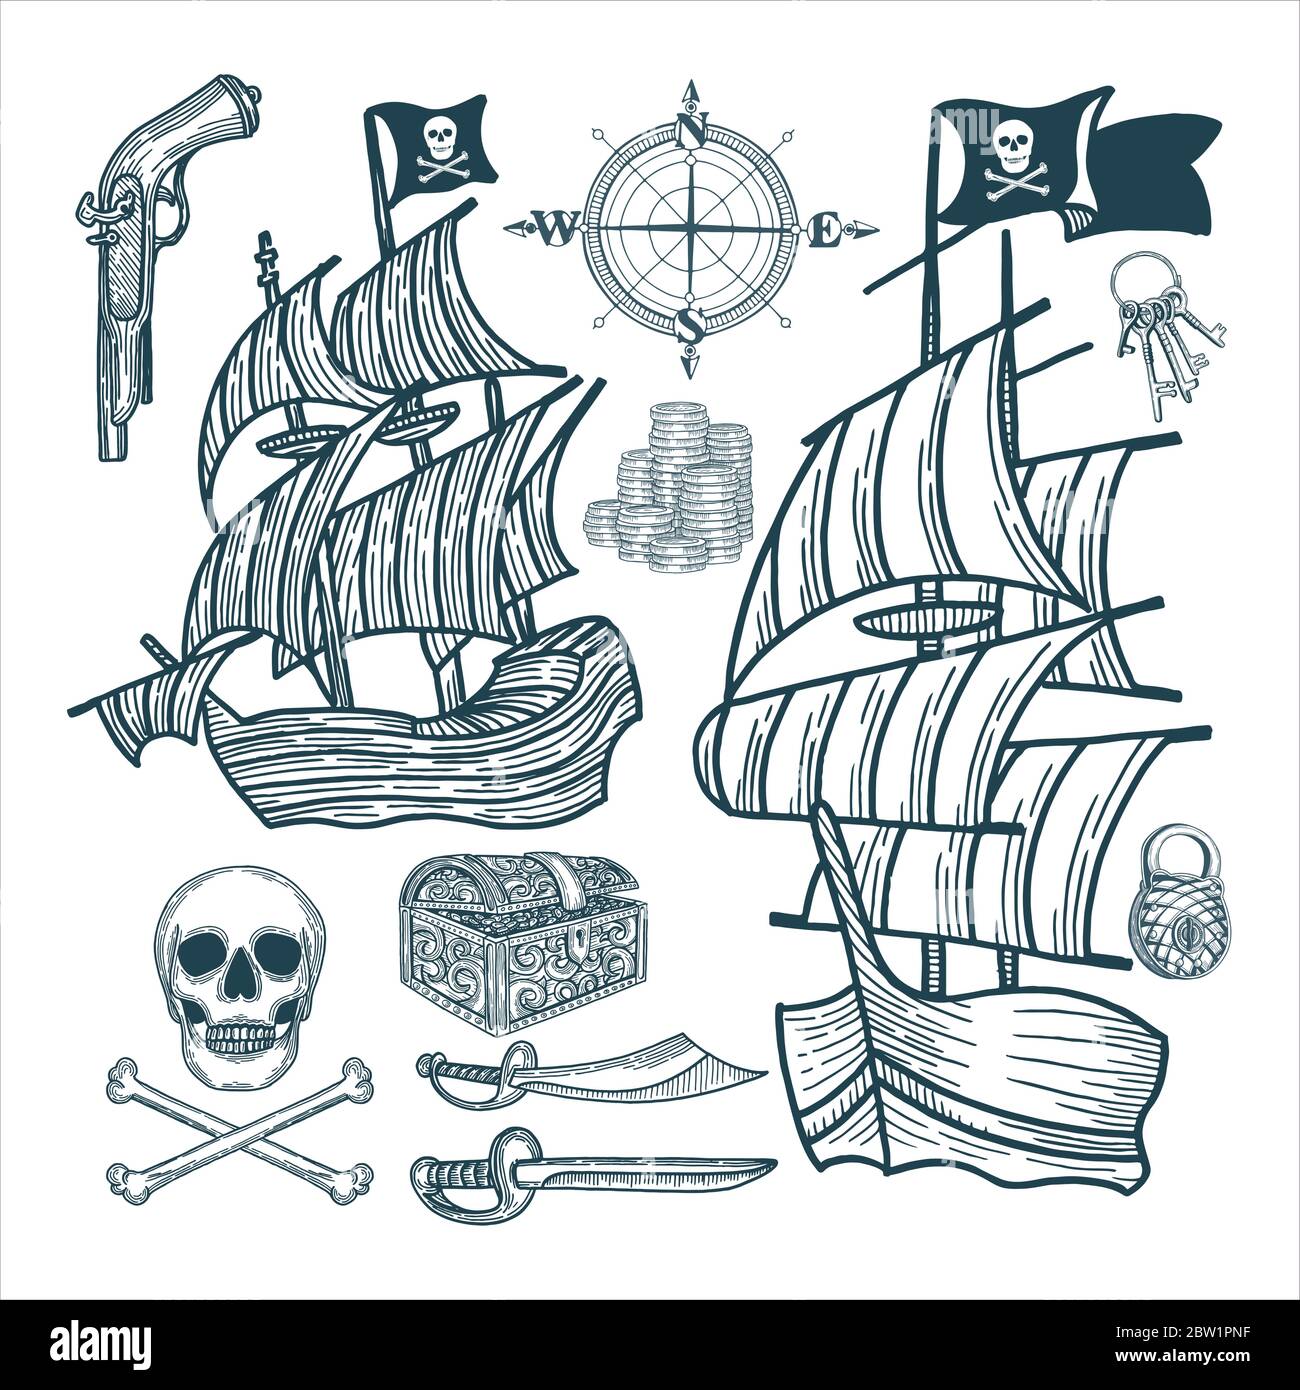 Versand. Piraten Segelschiff und Attribute Vektor-Illustrationen Set. Pirate symbolische Vintage-Stil Zeichnung. Teil des Sets. Stock Vektor